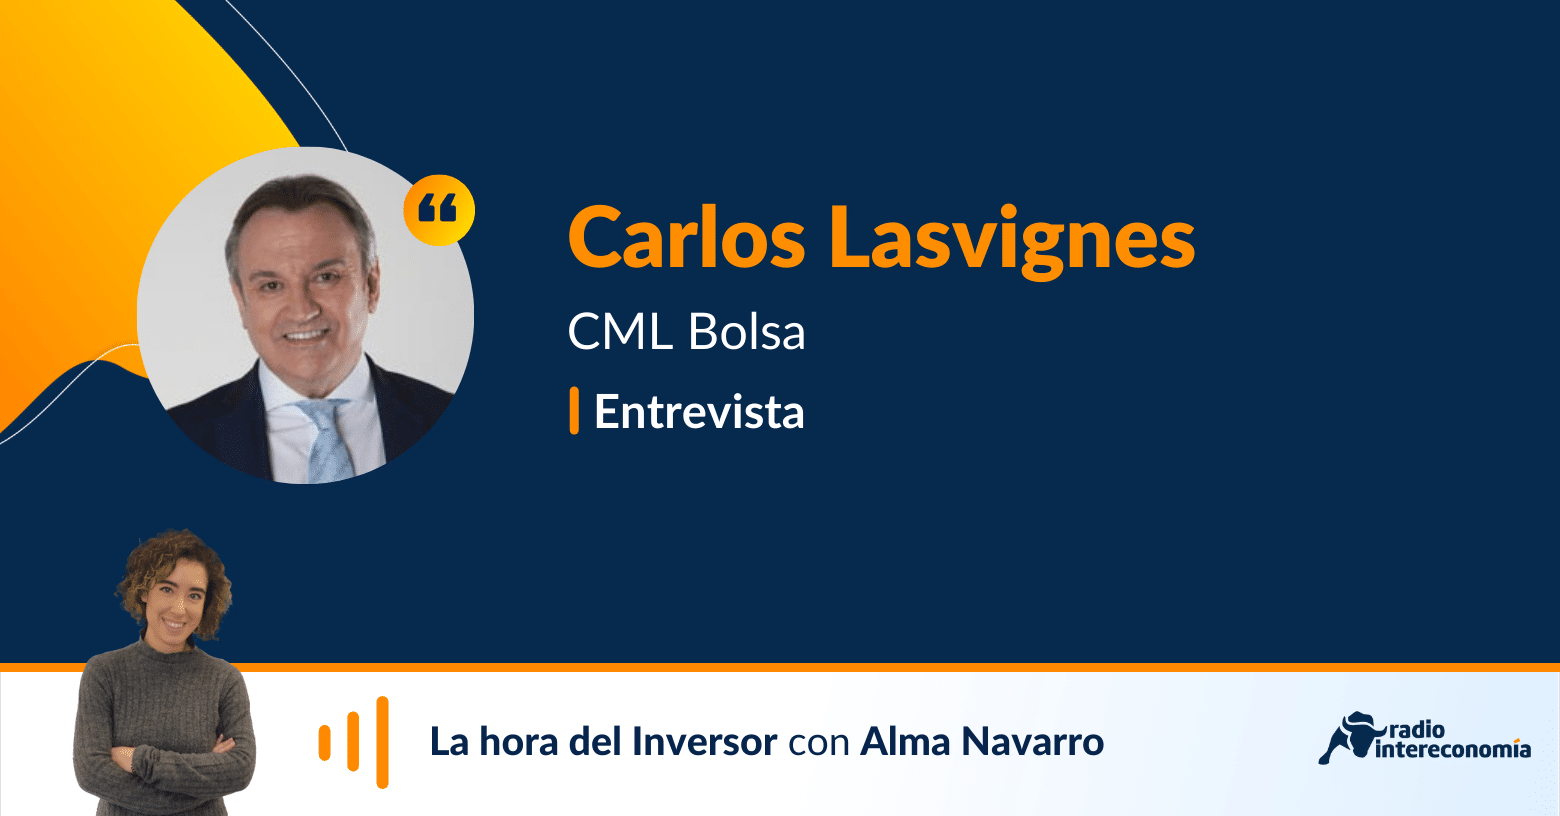 Aprender a invertir con el profesor Carlos Lasvignes de CML Bolsa